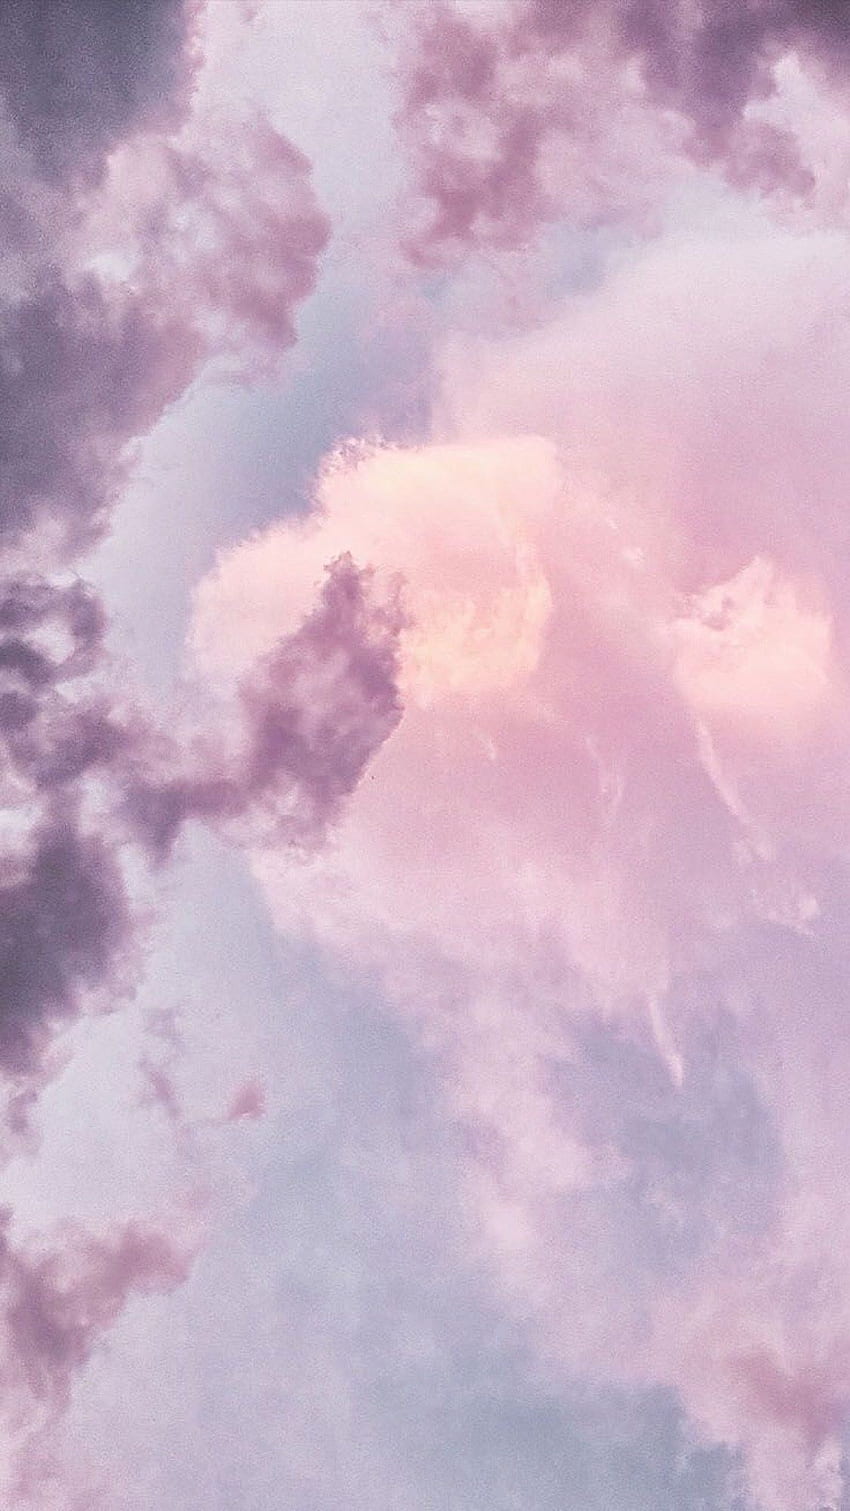 Himmel, Wolke, Pink, Tagsüber, Lila, Violett im Jahr 2020. Pastellfarbenes iPhone, ästhetisches iPhone, Preppy, pastellviolette Wolken HD-Handy-Hintergrundbild